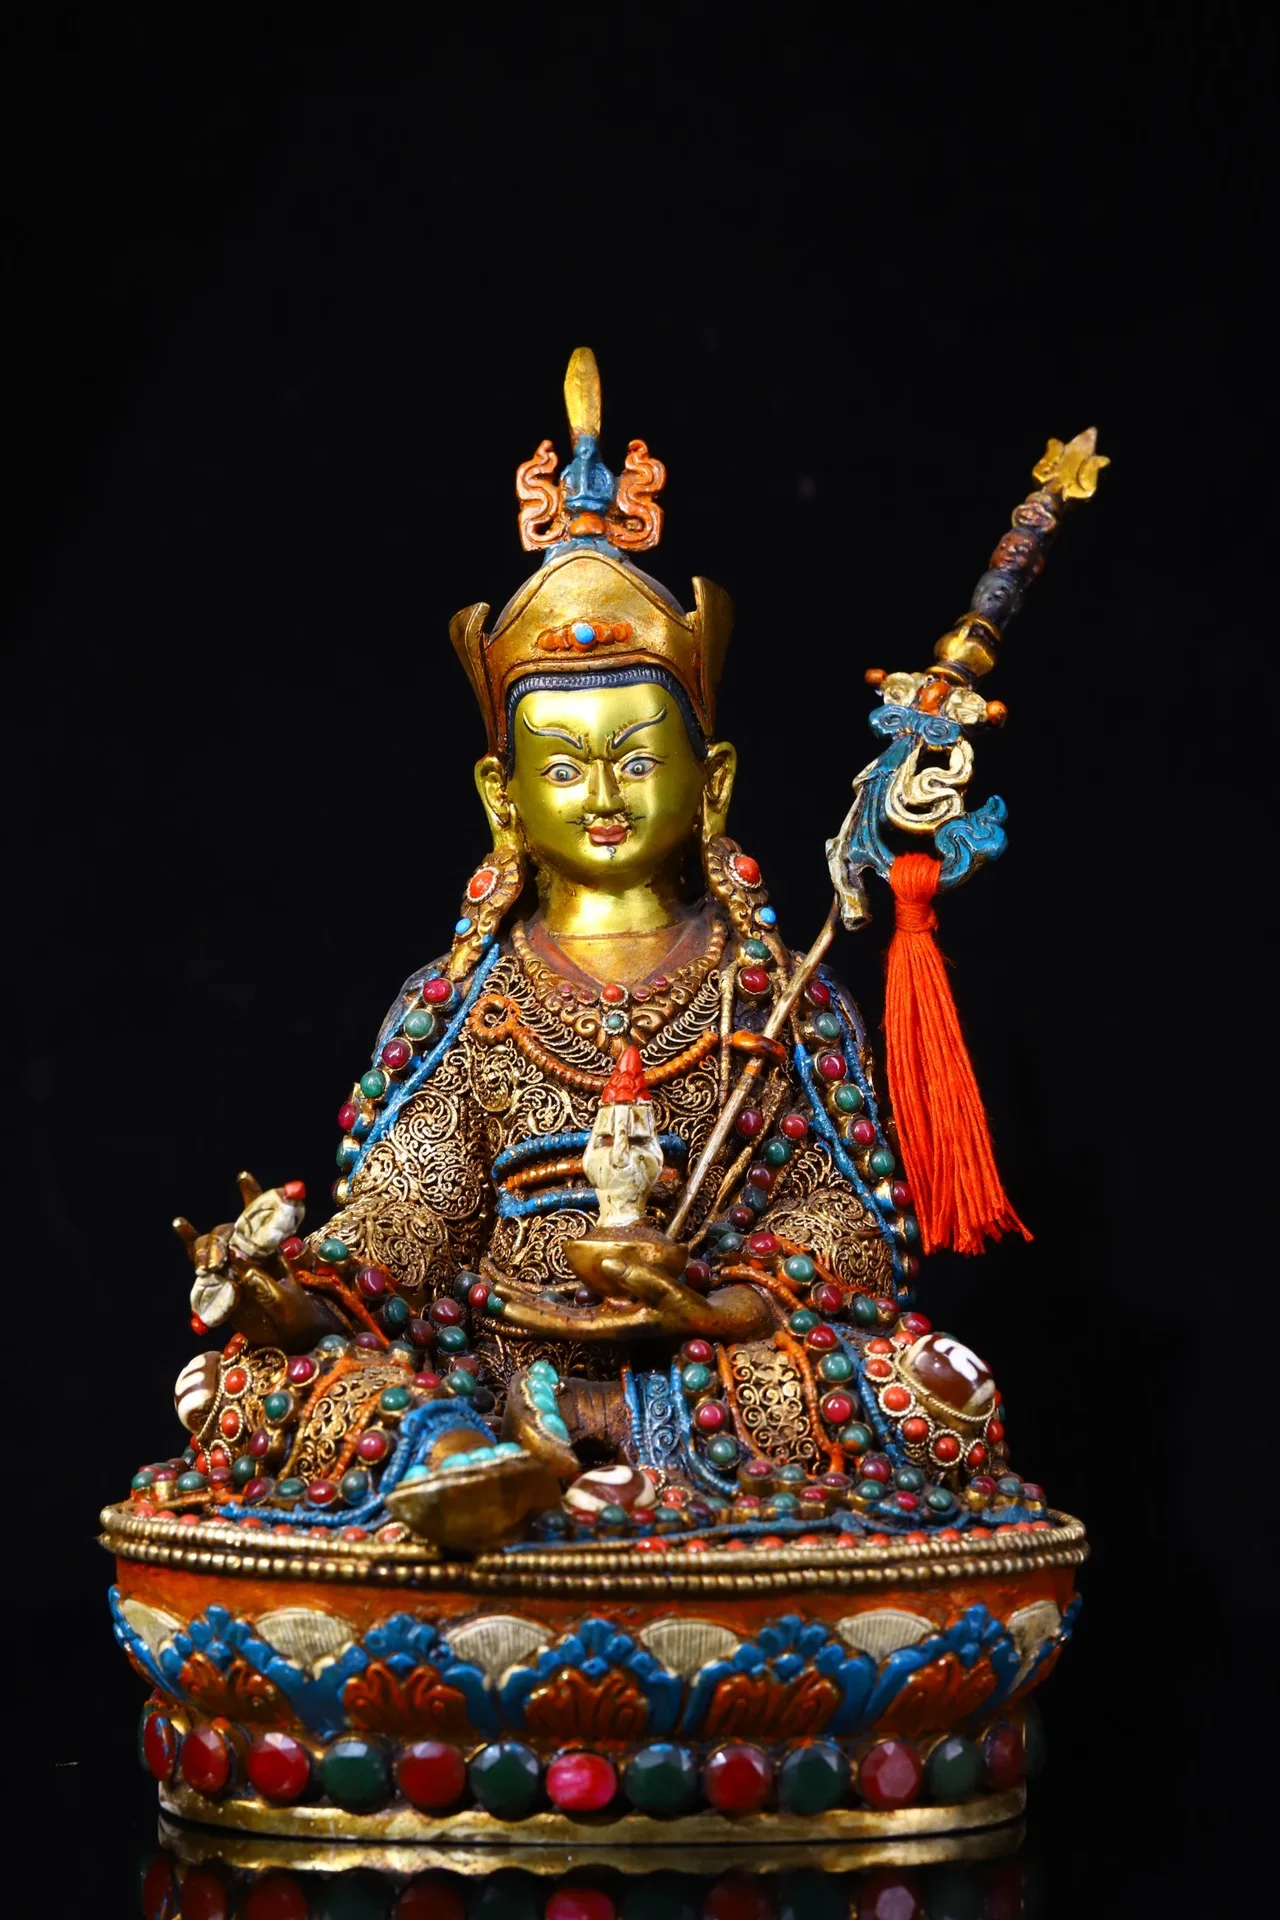 

Коллекция тибетских храмов 9 дюймов, старые бронзовые контуры в золоте, драгоценные камни, бусины Dzi, Padmasambhava, платформа лотоса, семейный дом